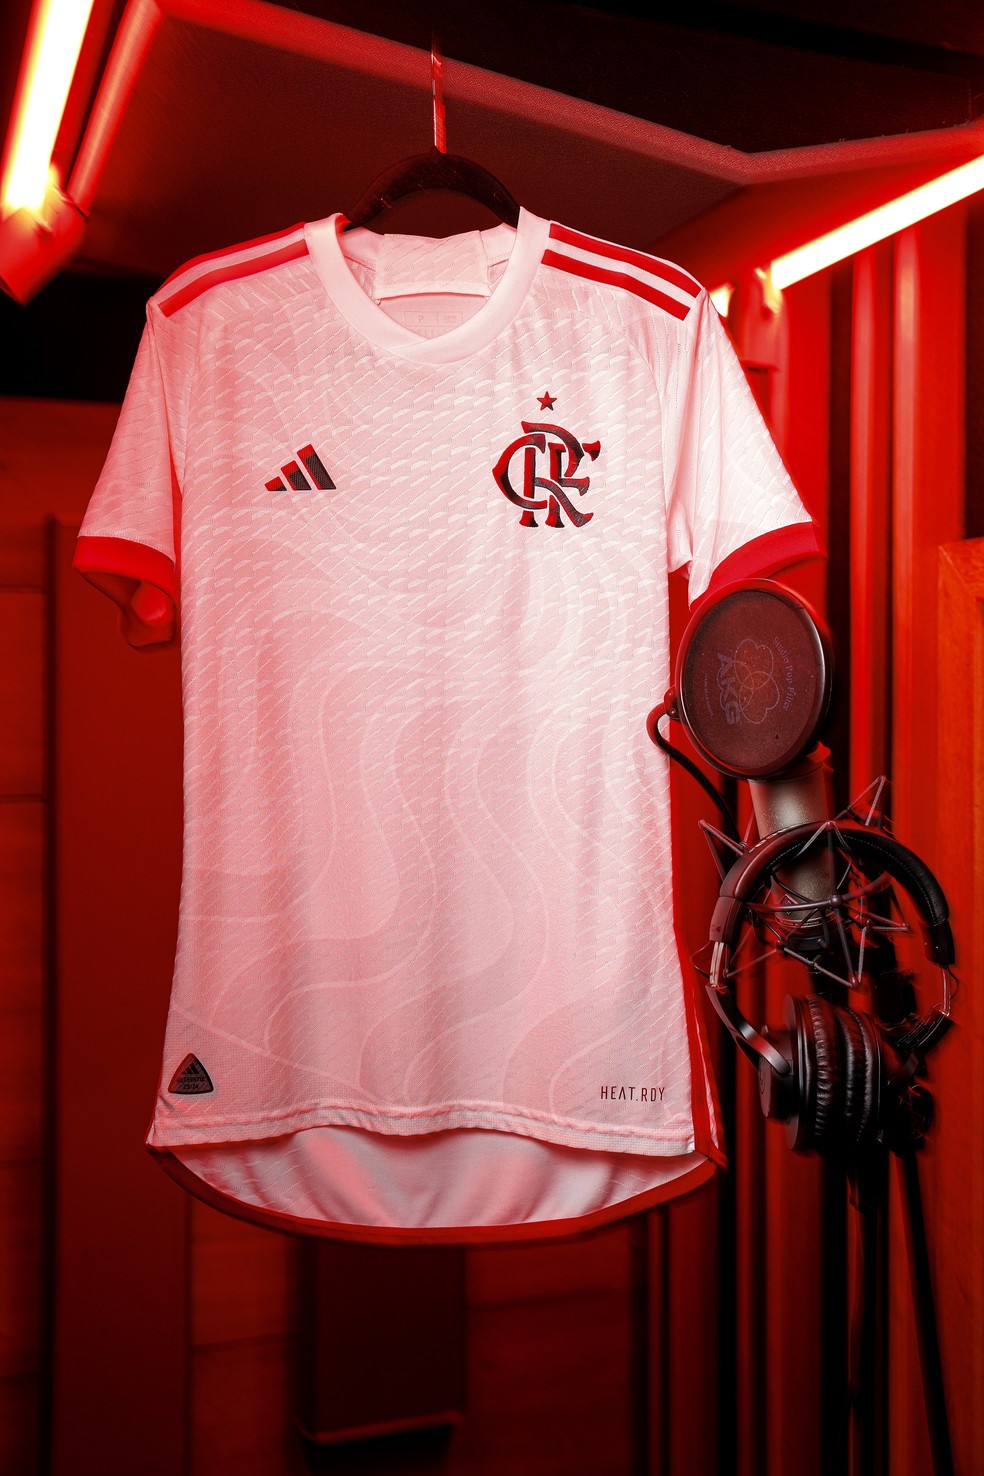 Confira a nova camisa do Flamengo em ensaio feito dentro de um estúdio de gravação — Foto: Adidas/Divulgação